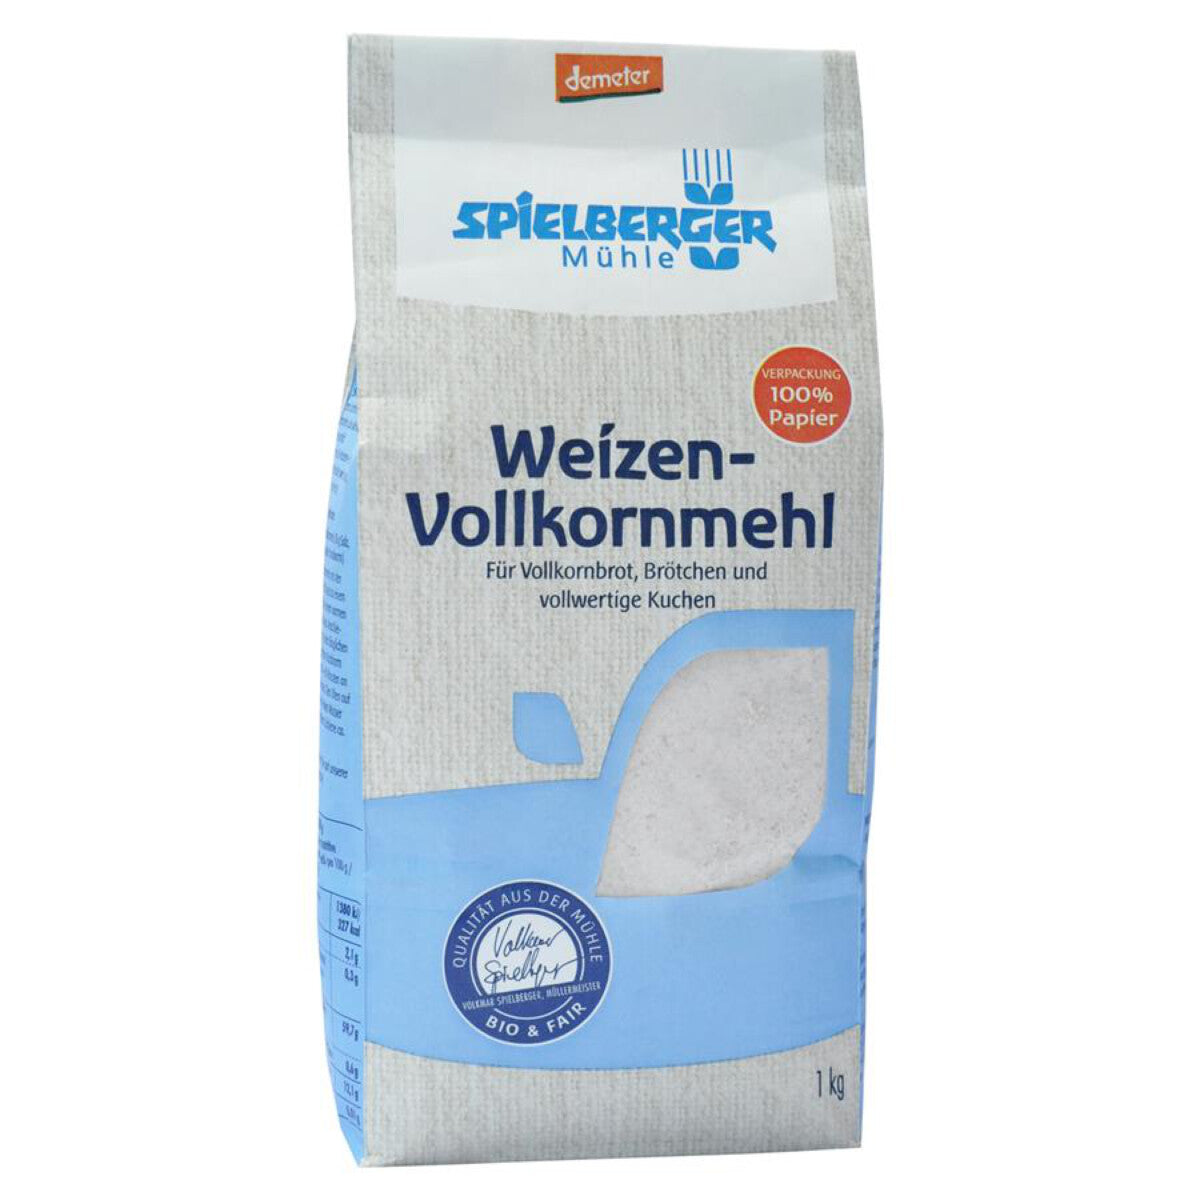 SPIELBERGER MÜHLE Weizen-Vollkornmehl - 1 kg